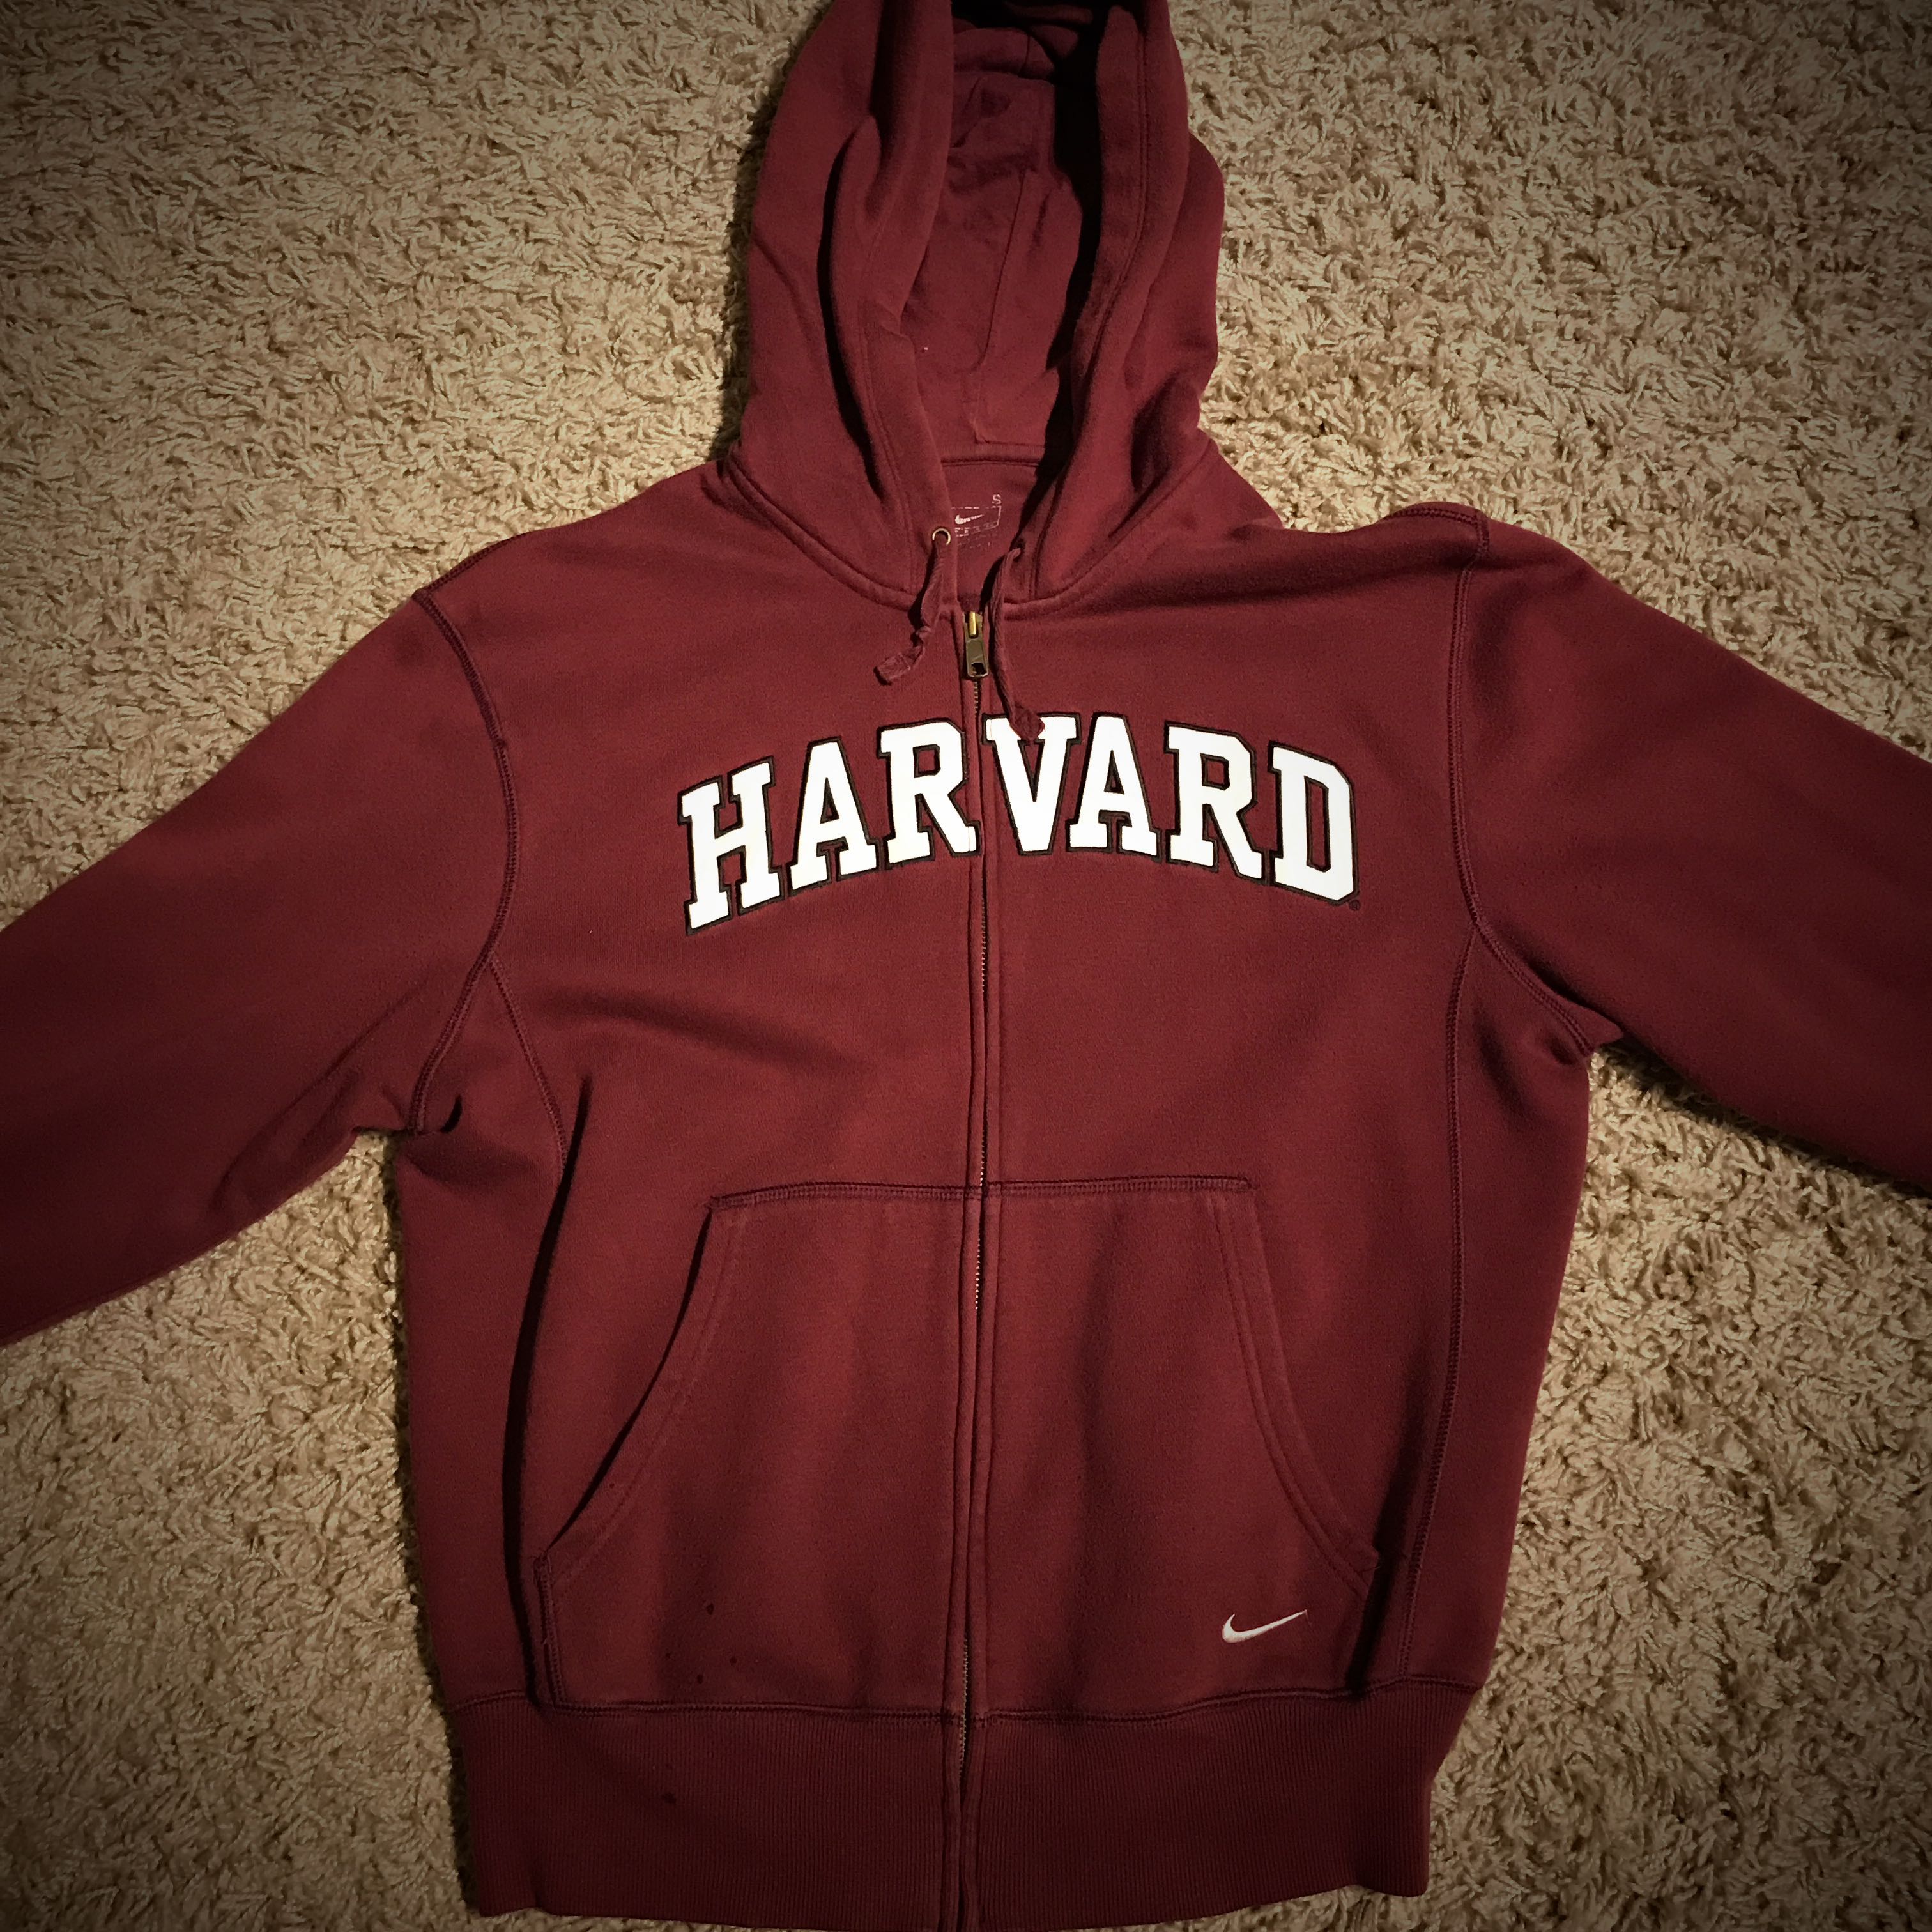 Harvard Nike Hoodie, Men's Fashion 